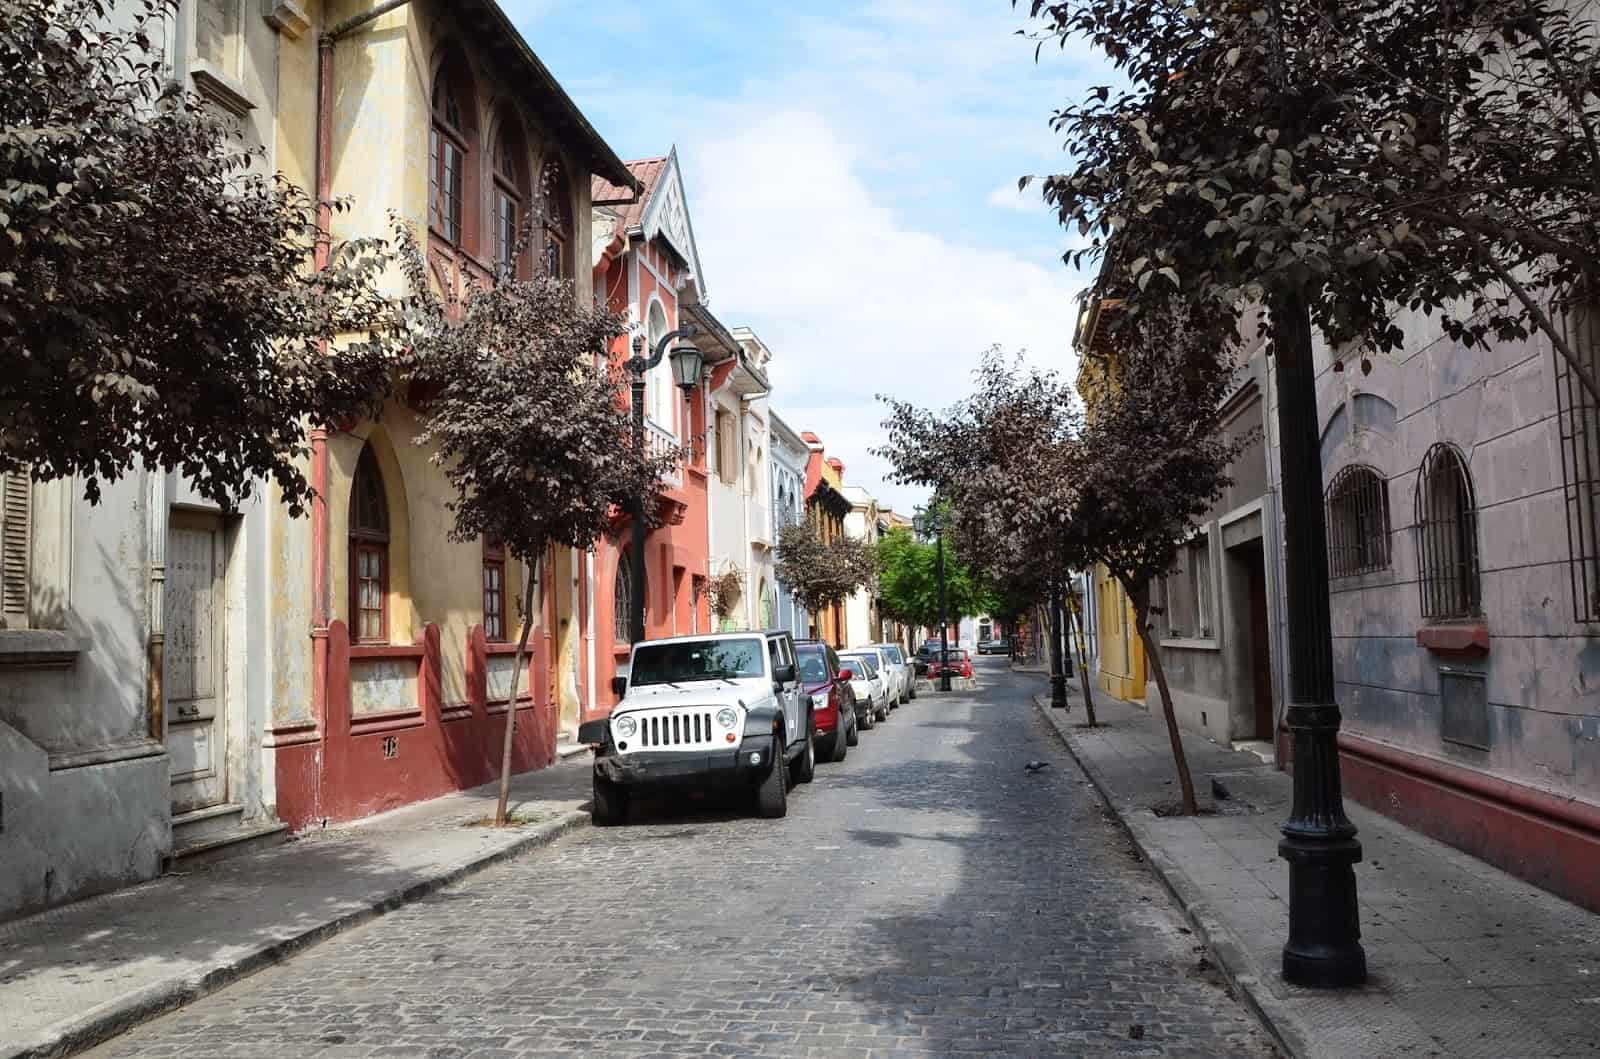 Pasaje Lucrecia Valdés in Barrio Yungay, Santiago de Chile